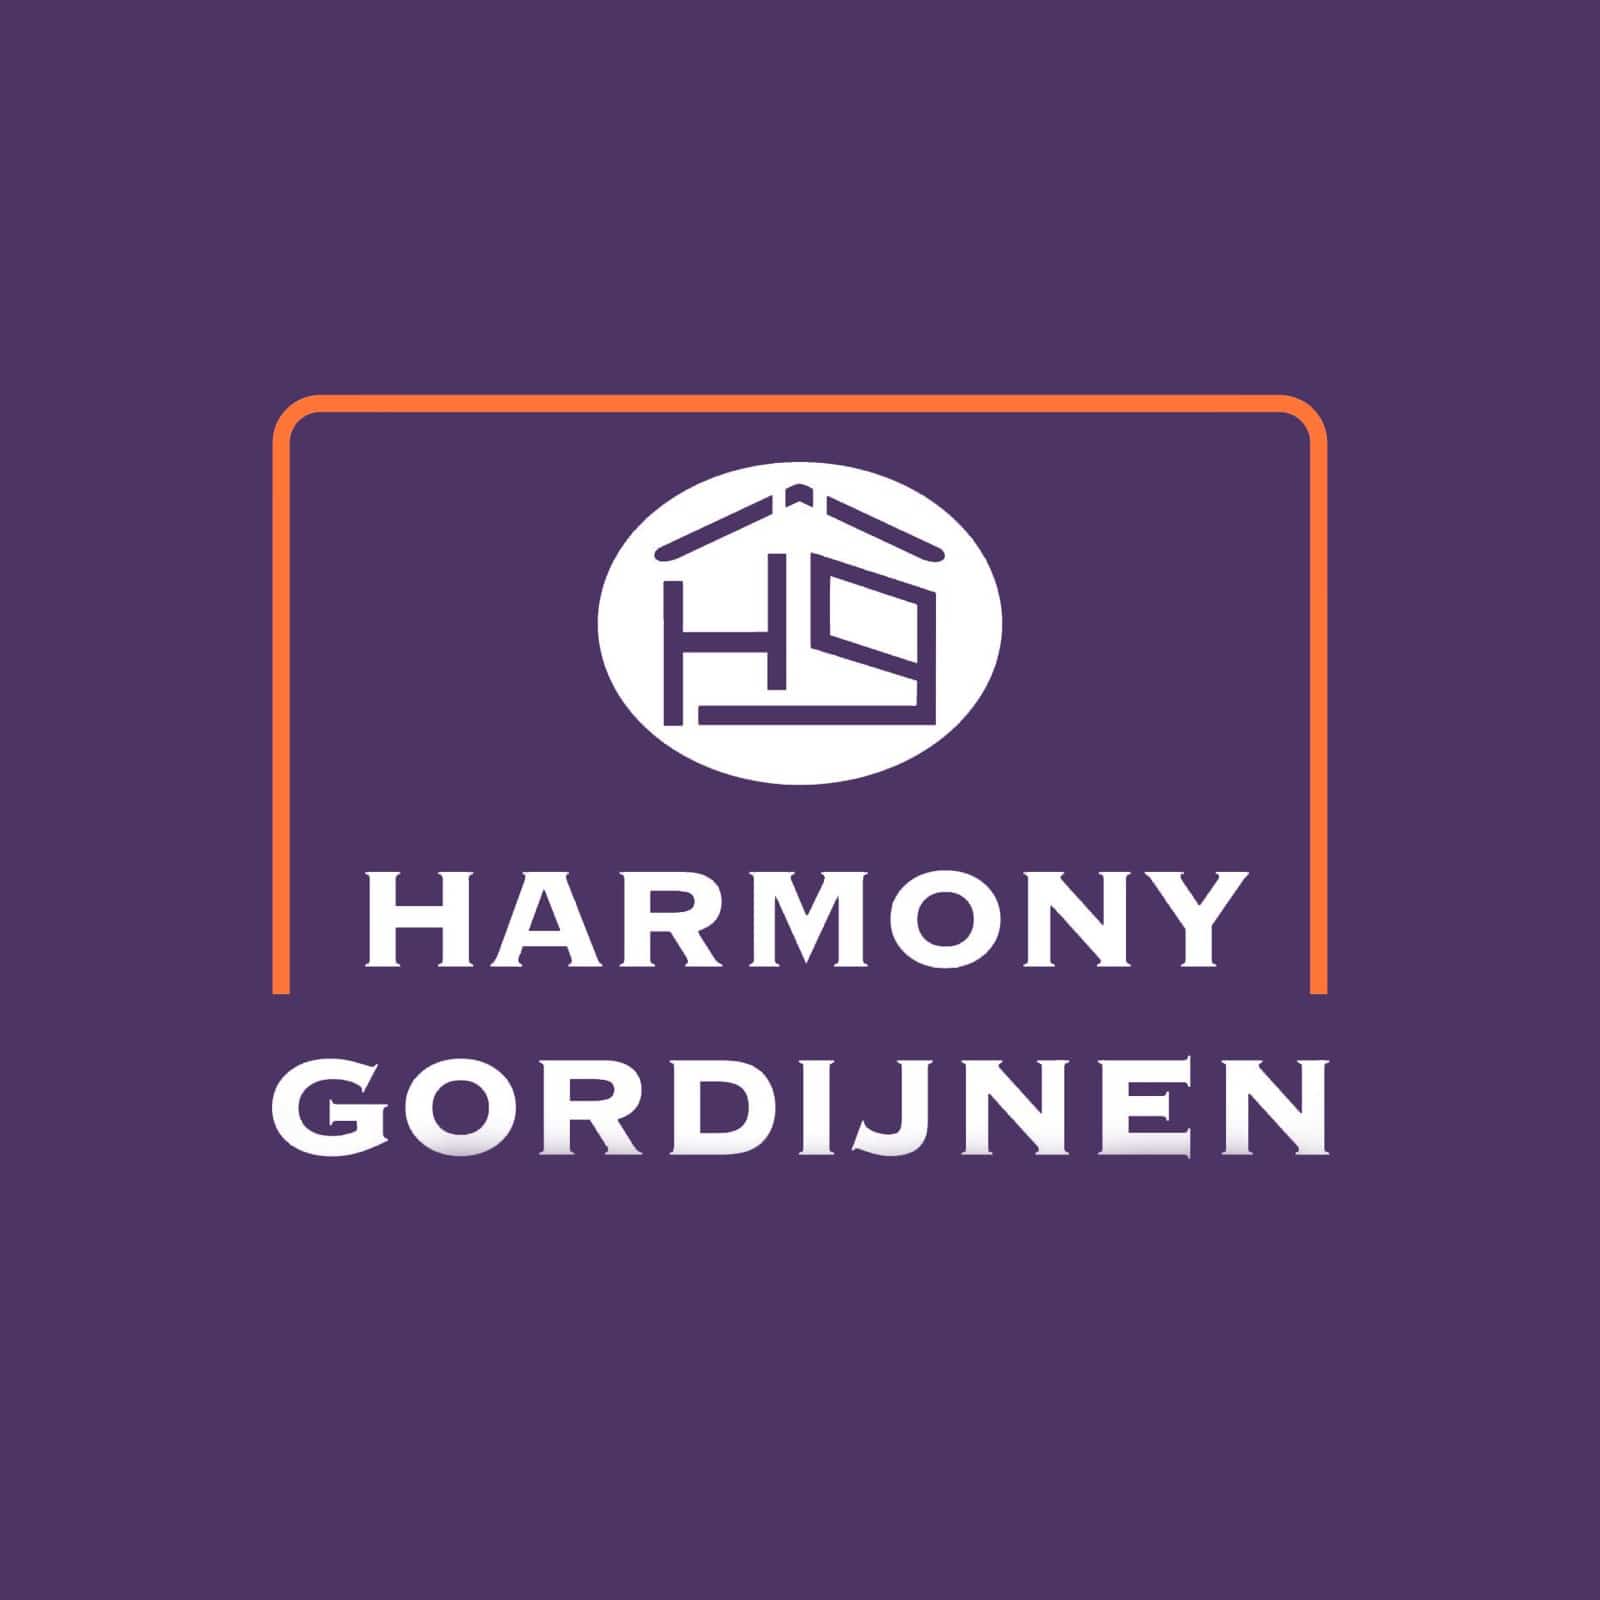 Harmony Gordijnen